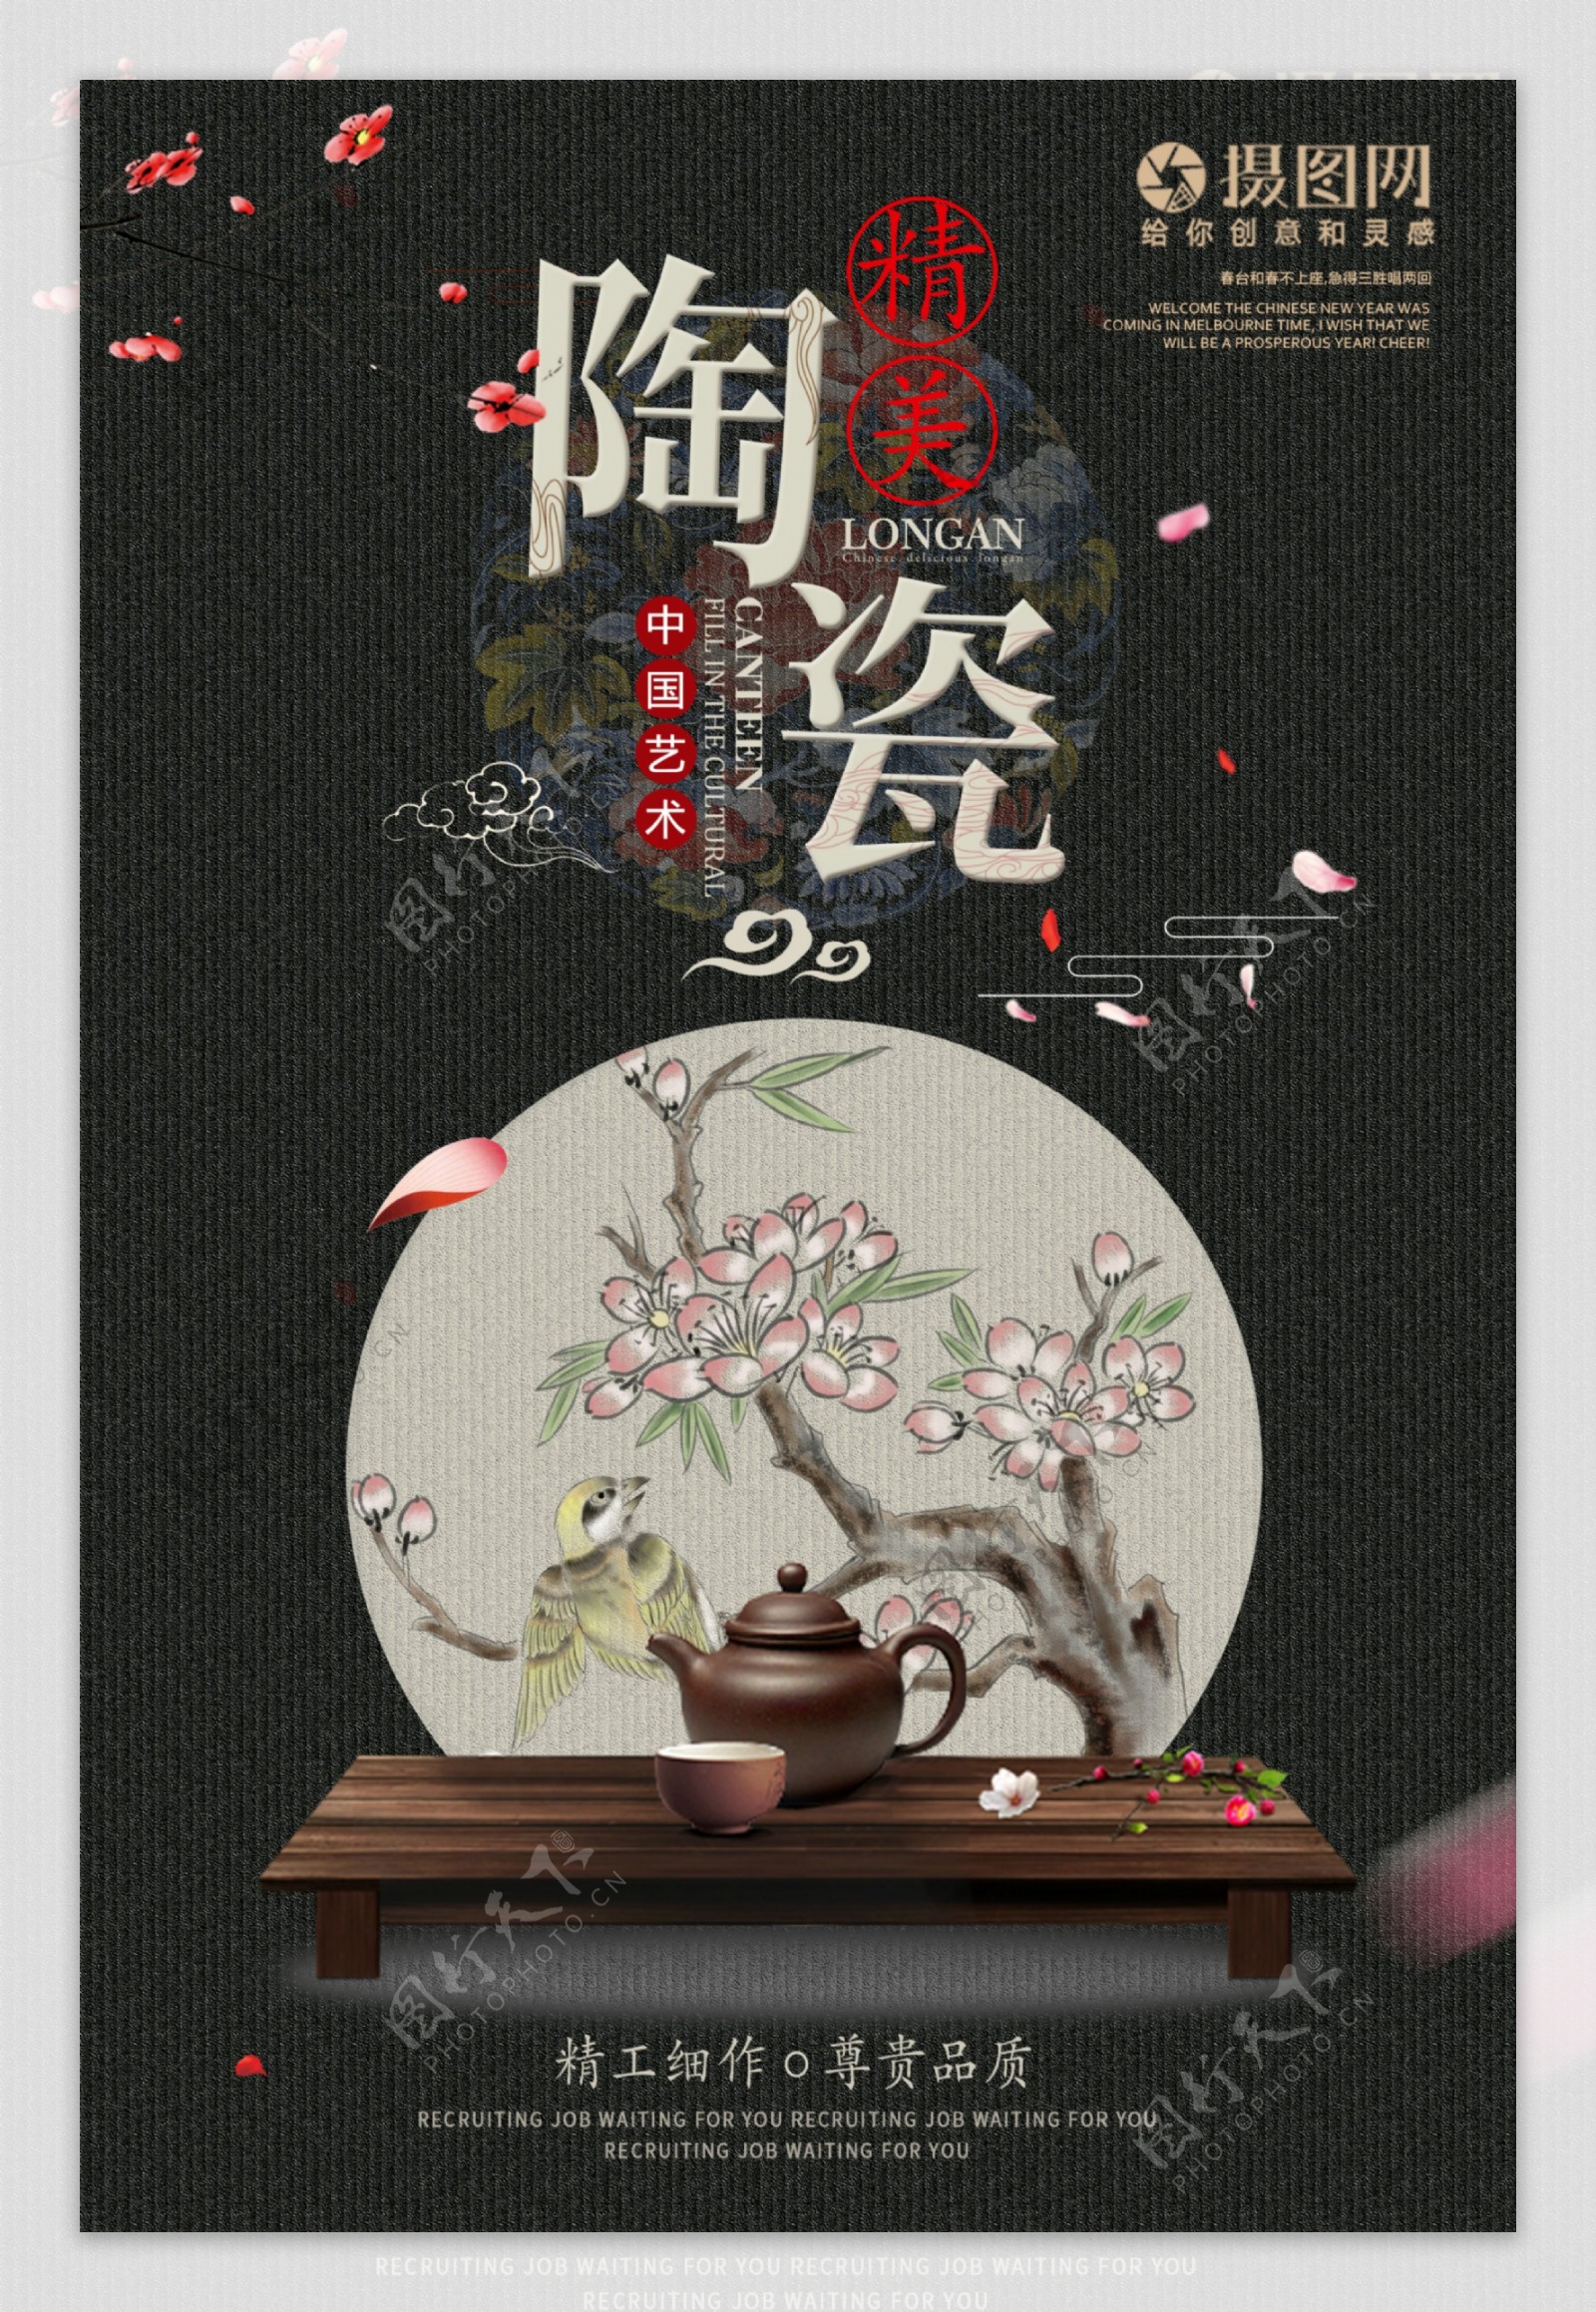 中国艺术传统瓷器文化陶瓷艺术海报